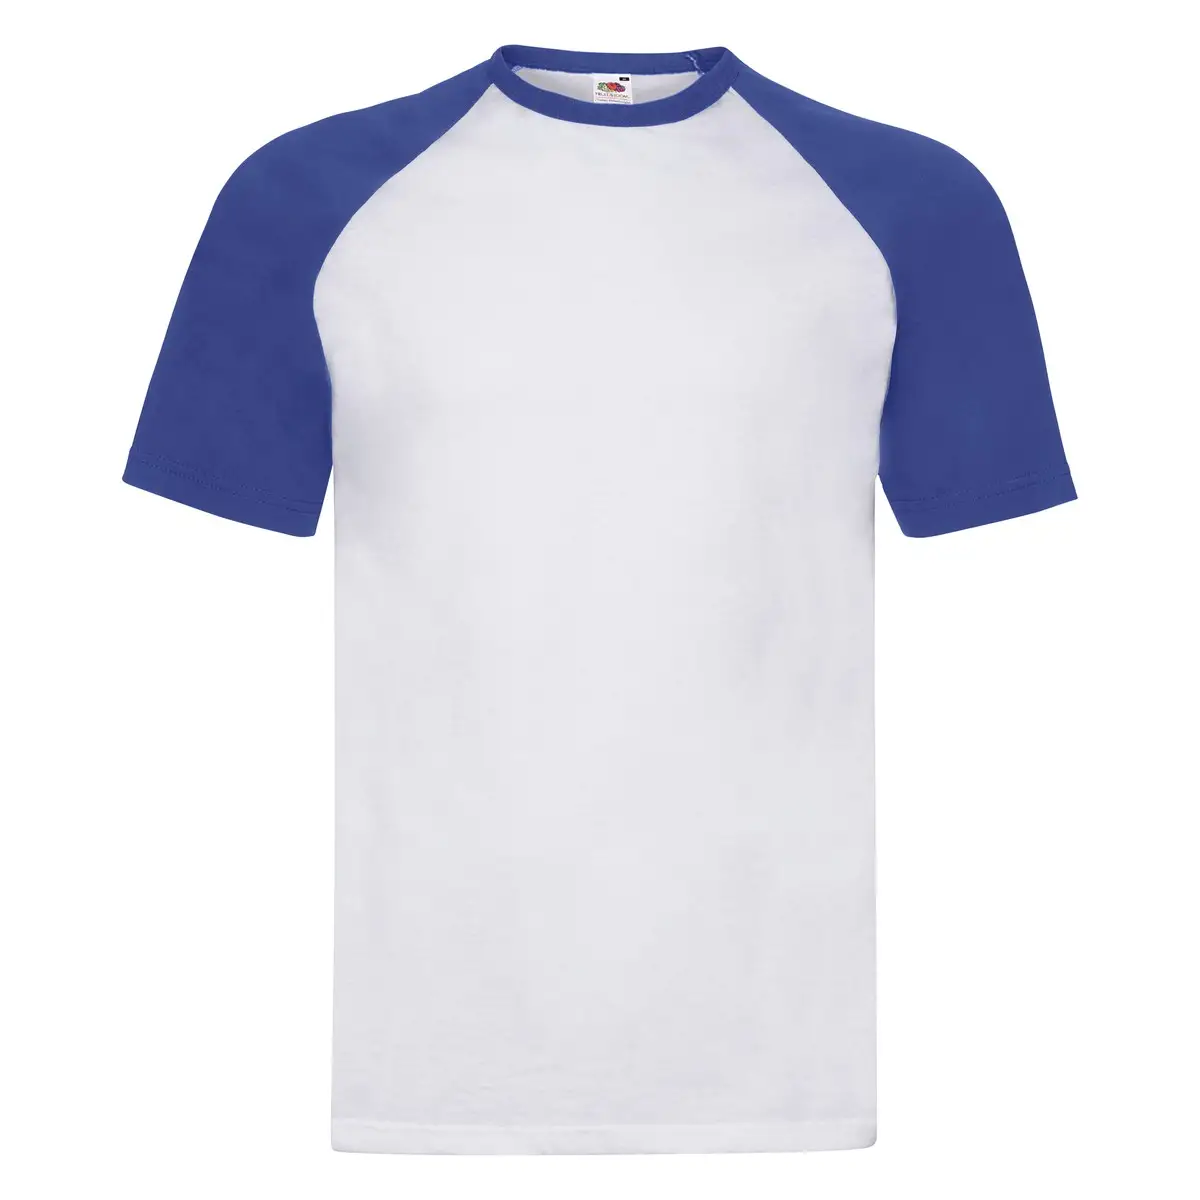 T-Shirt Uomo Cotone Manica Corta Personalizzata - Fruit of the Loom